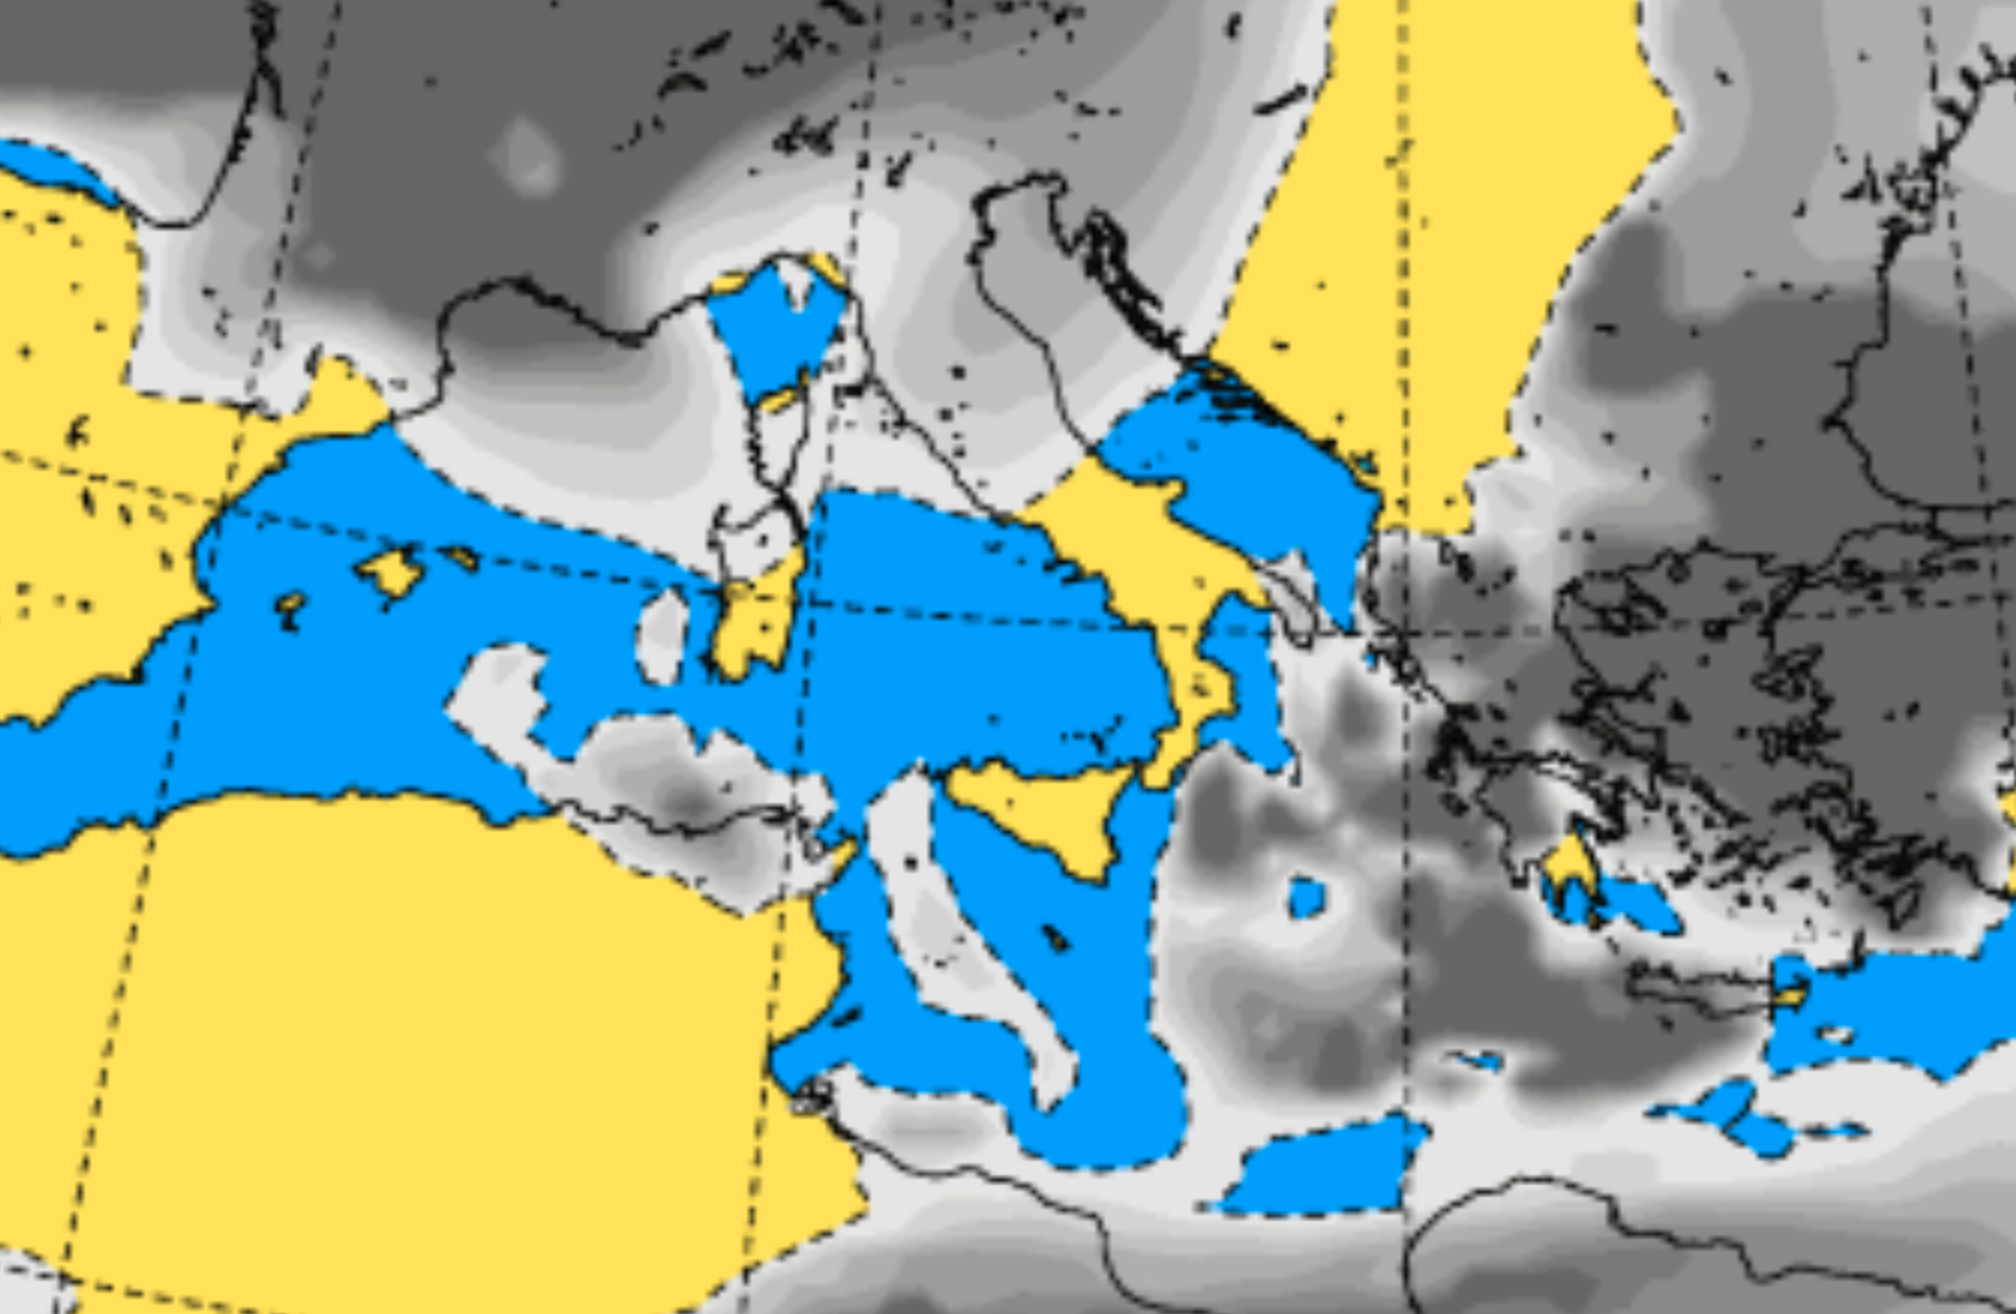 Meteo Sicilia, dopo giorni di maltempo migliorano le condizioni meteo: domani assenti temporali o rovesci